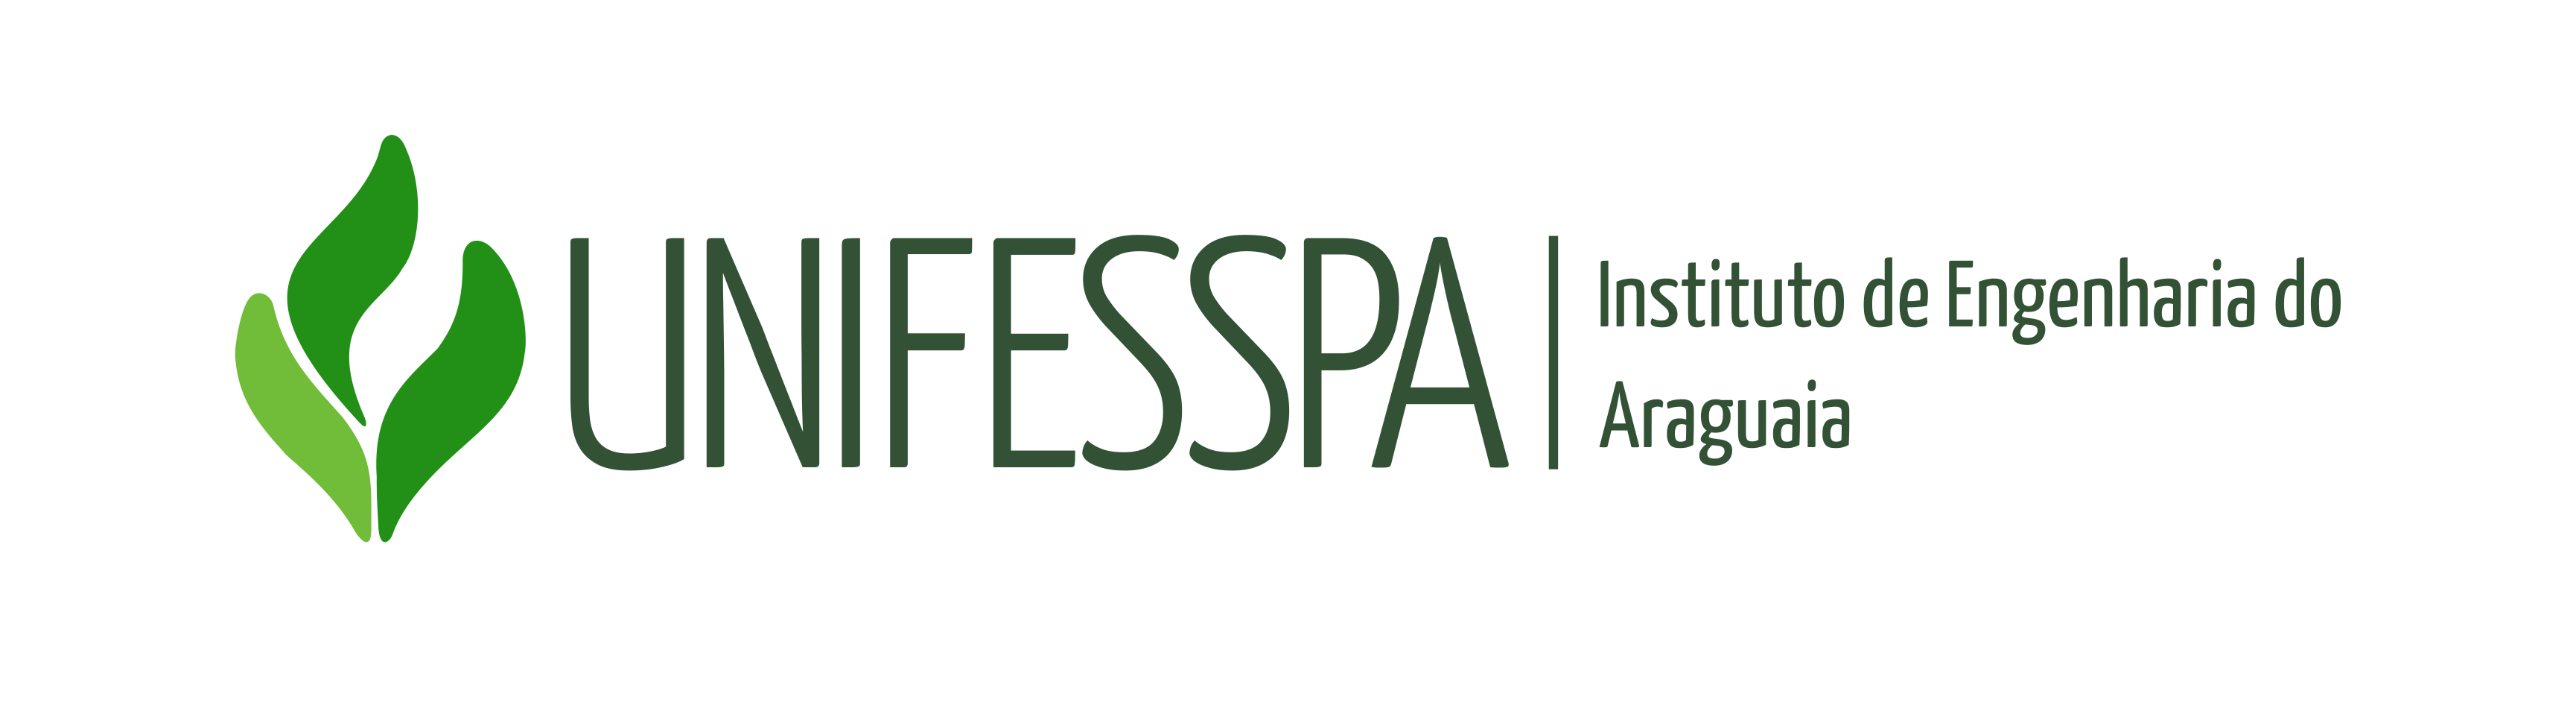 IEA/UNIFESSPA